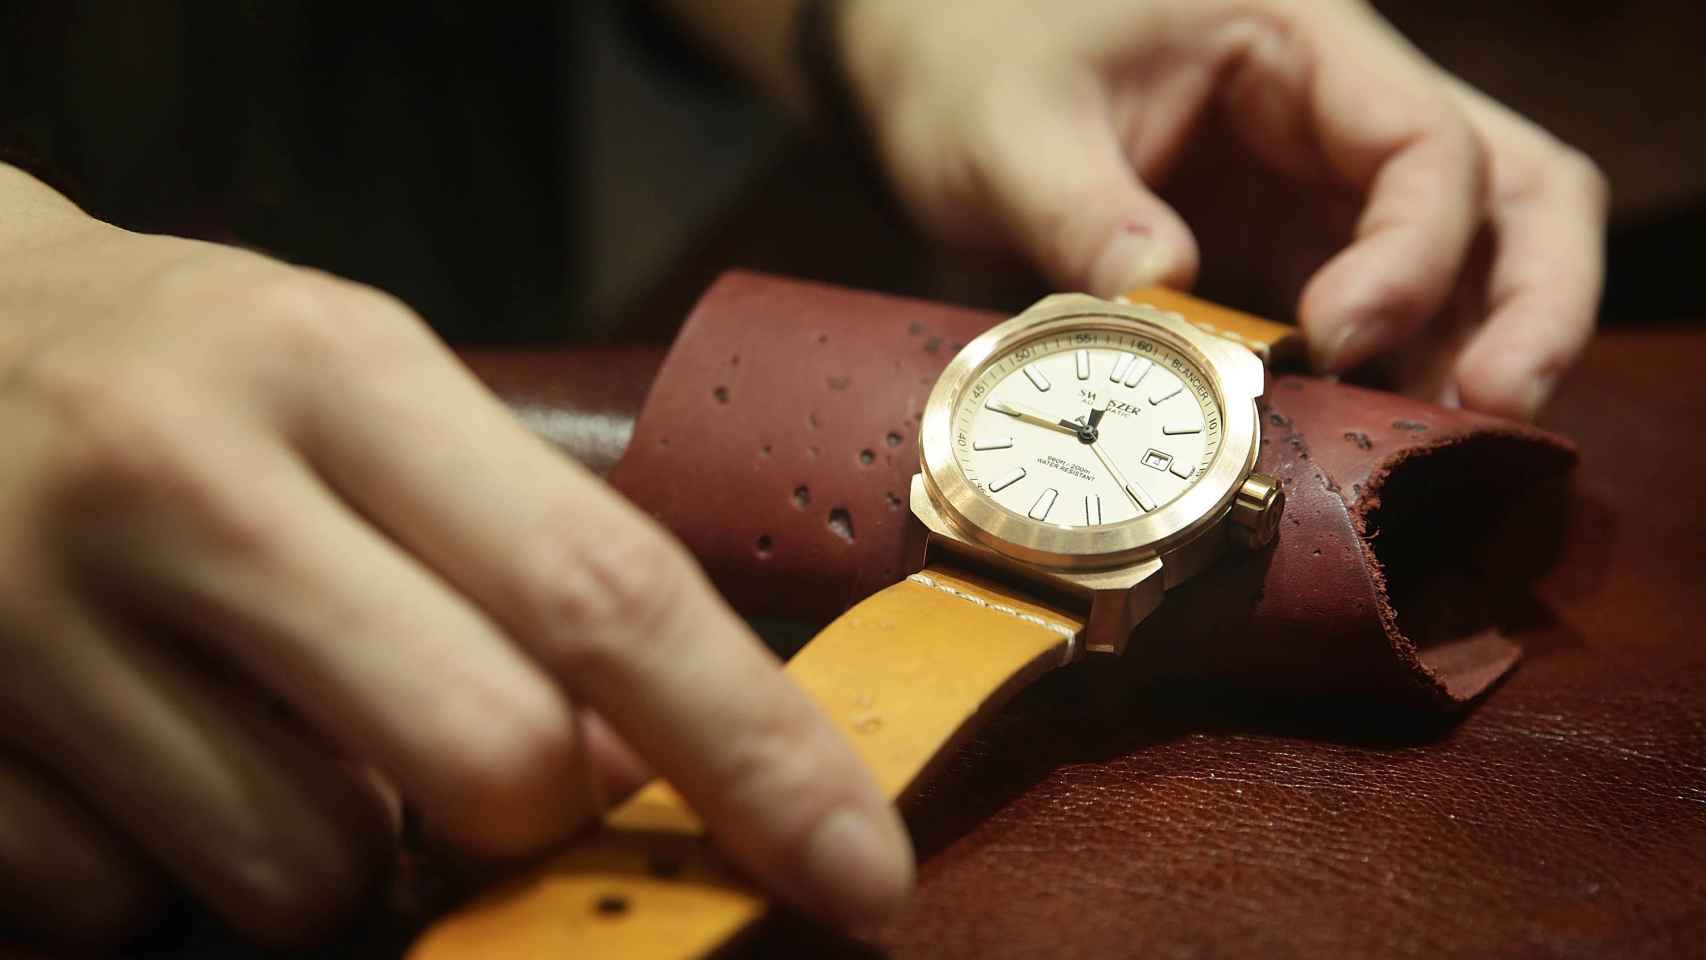 El tamaño, la correa y el estilo son factores clave a la hora de elegir un reloj. | Foto: Getty Images.